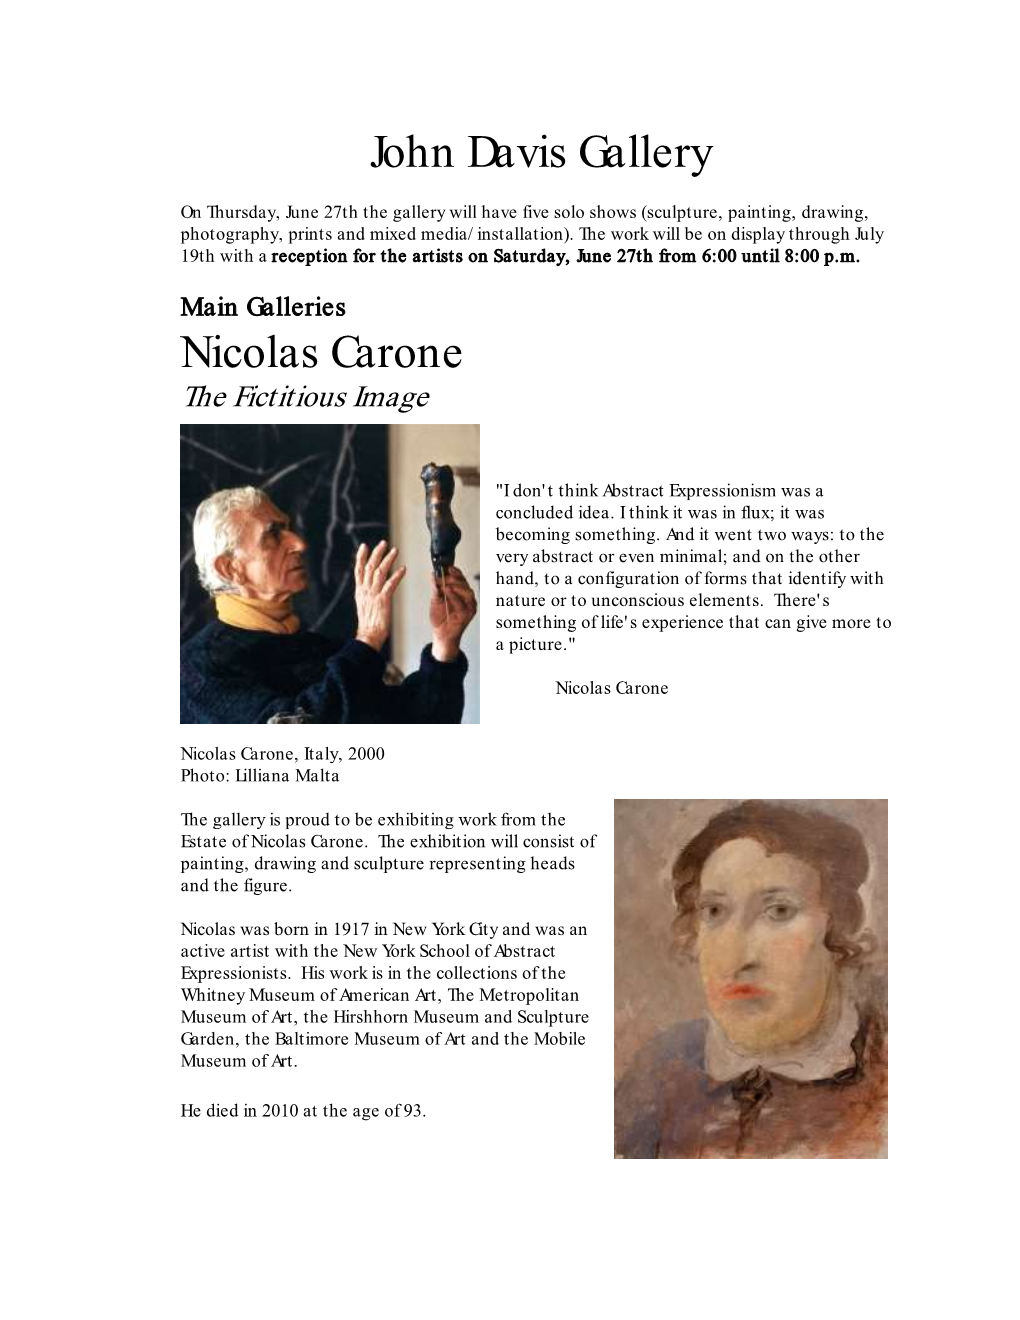 John Davis Gallery Nicolas Carone